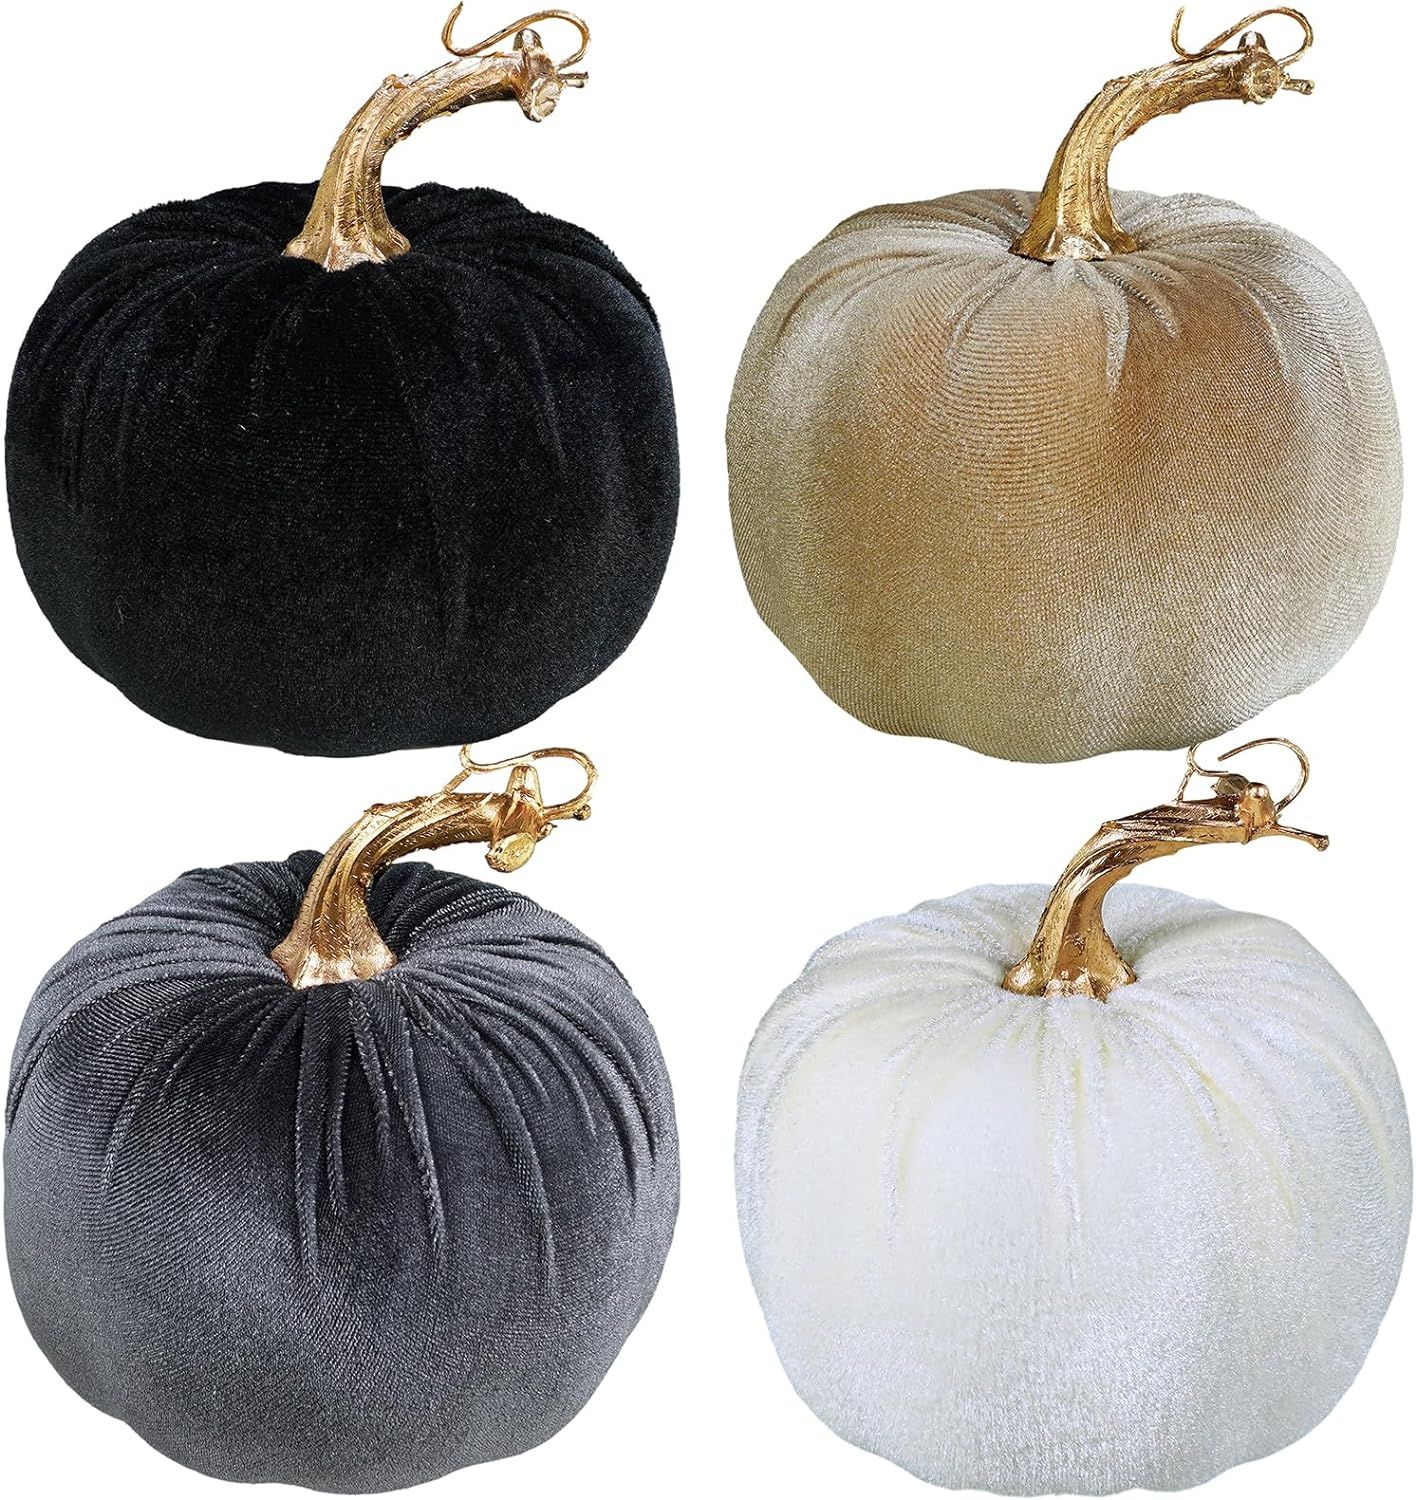 Winlyn 4 Pcs Assorted Faux Velvet Pumpkins Decorative Fabric Pumpkins Foam Pumpkins in White Blac... | Amazon (US)